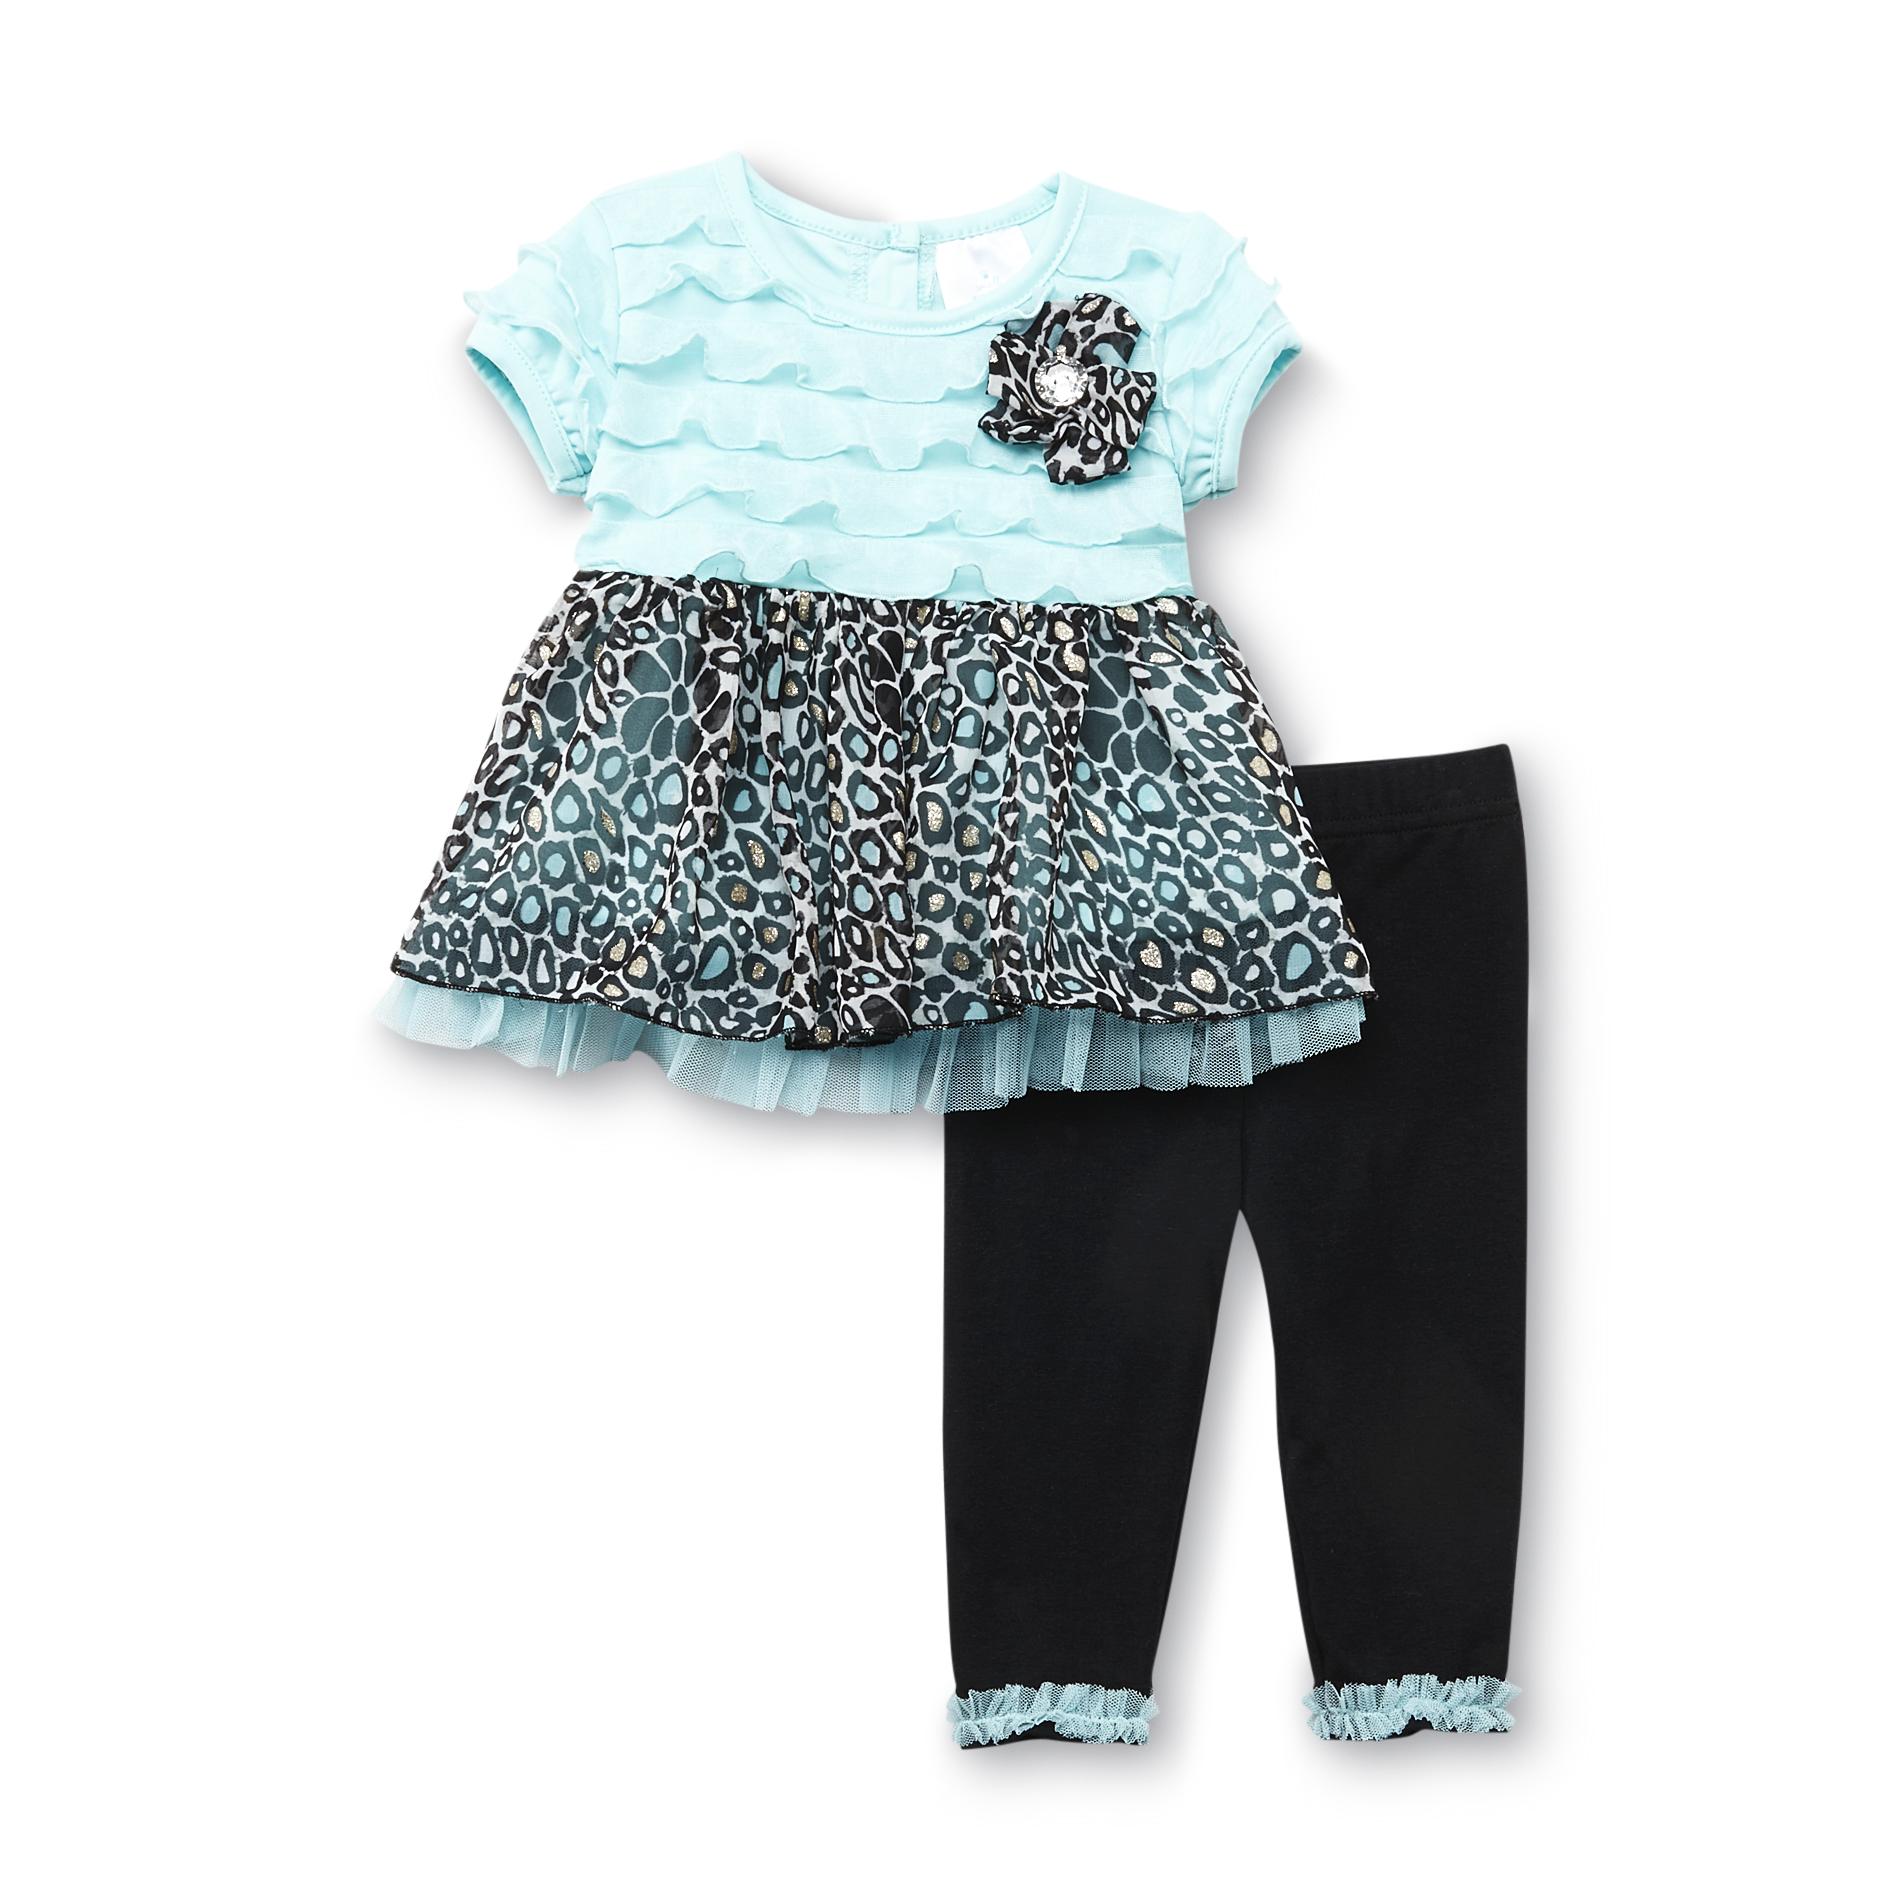 WonderKids Infant & Toddler Girl's Dress & Leggings - Leopard Print